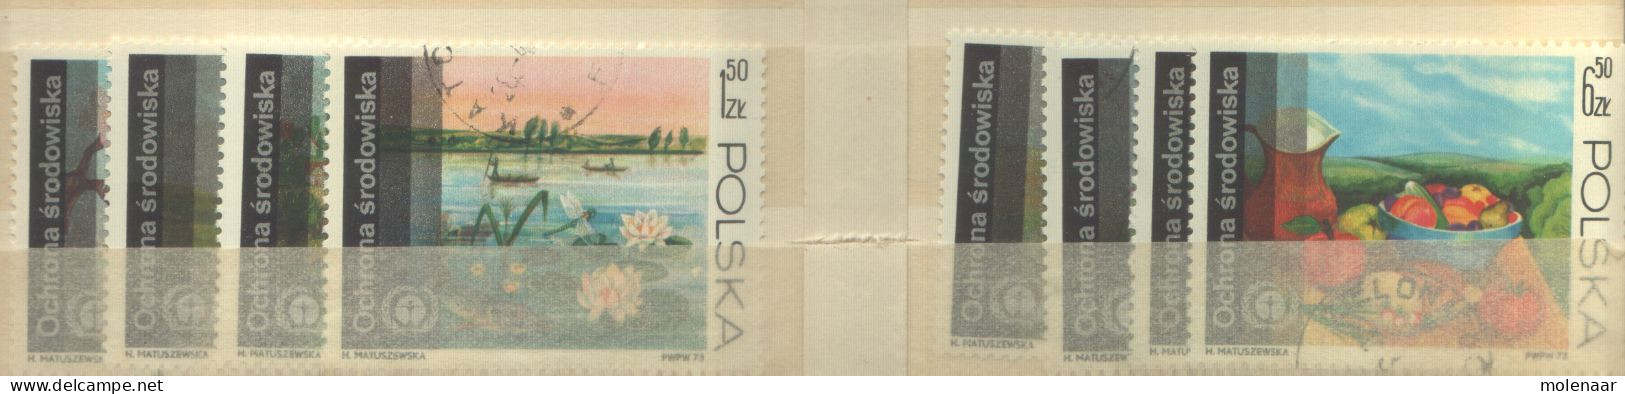 Postzegels > Europa > Polen > 1944-.... Republiek > 1971-80 > Gebruikt No. 2262-2269 (12091) - Usados